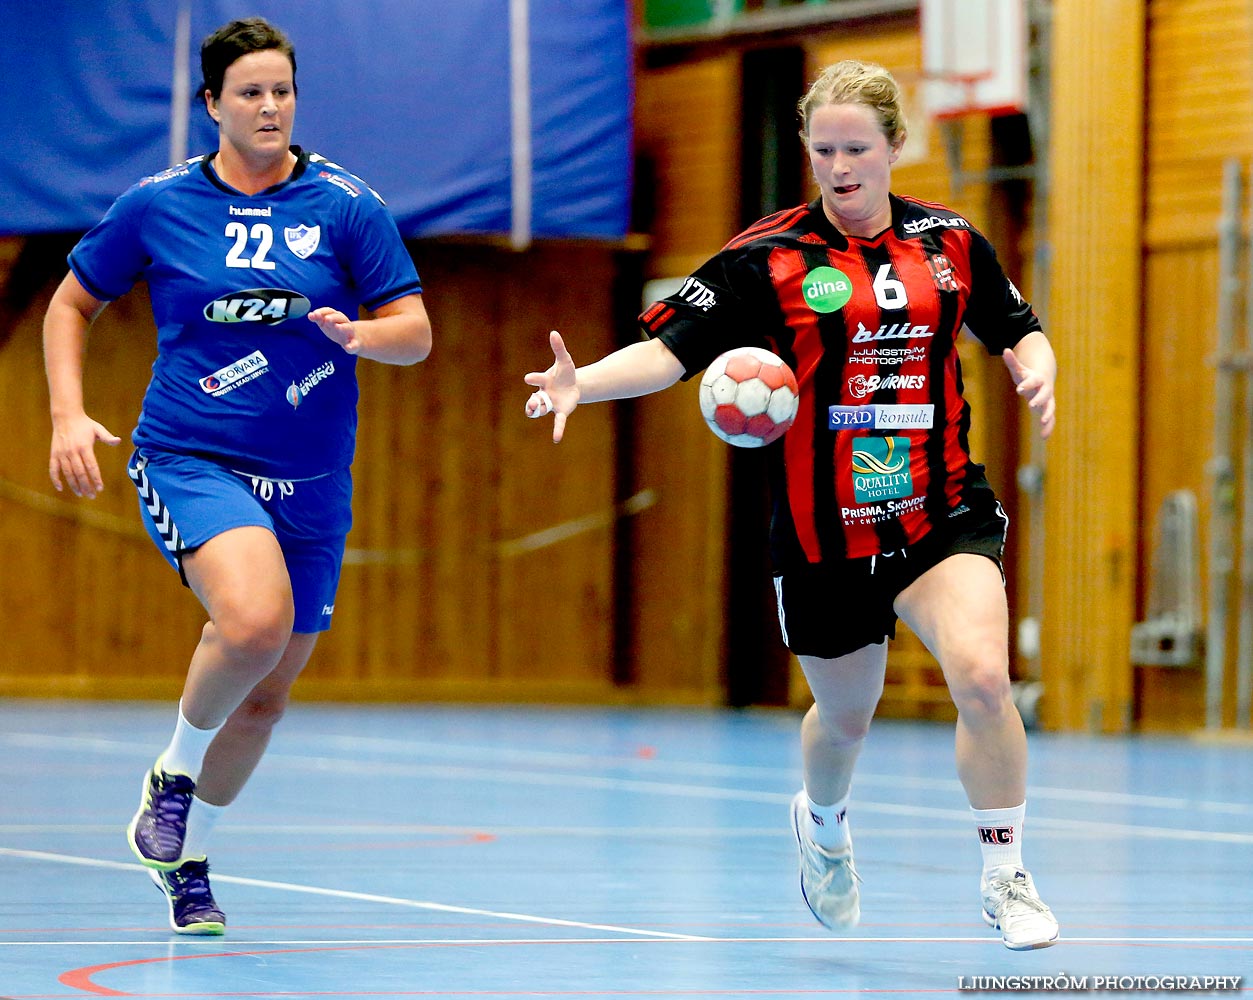 HK Country-IFK Bankeryd 23-26,dam,Stöpenhallen,Stöpen,Sverige,Handboll,,2014,96871